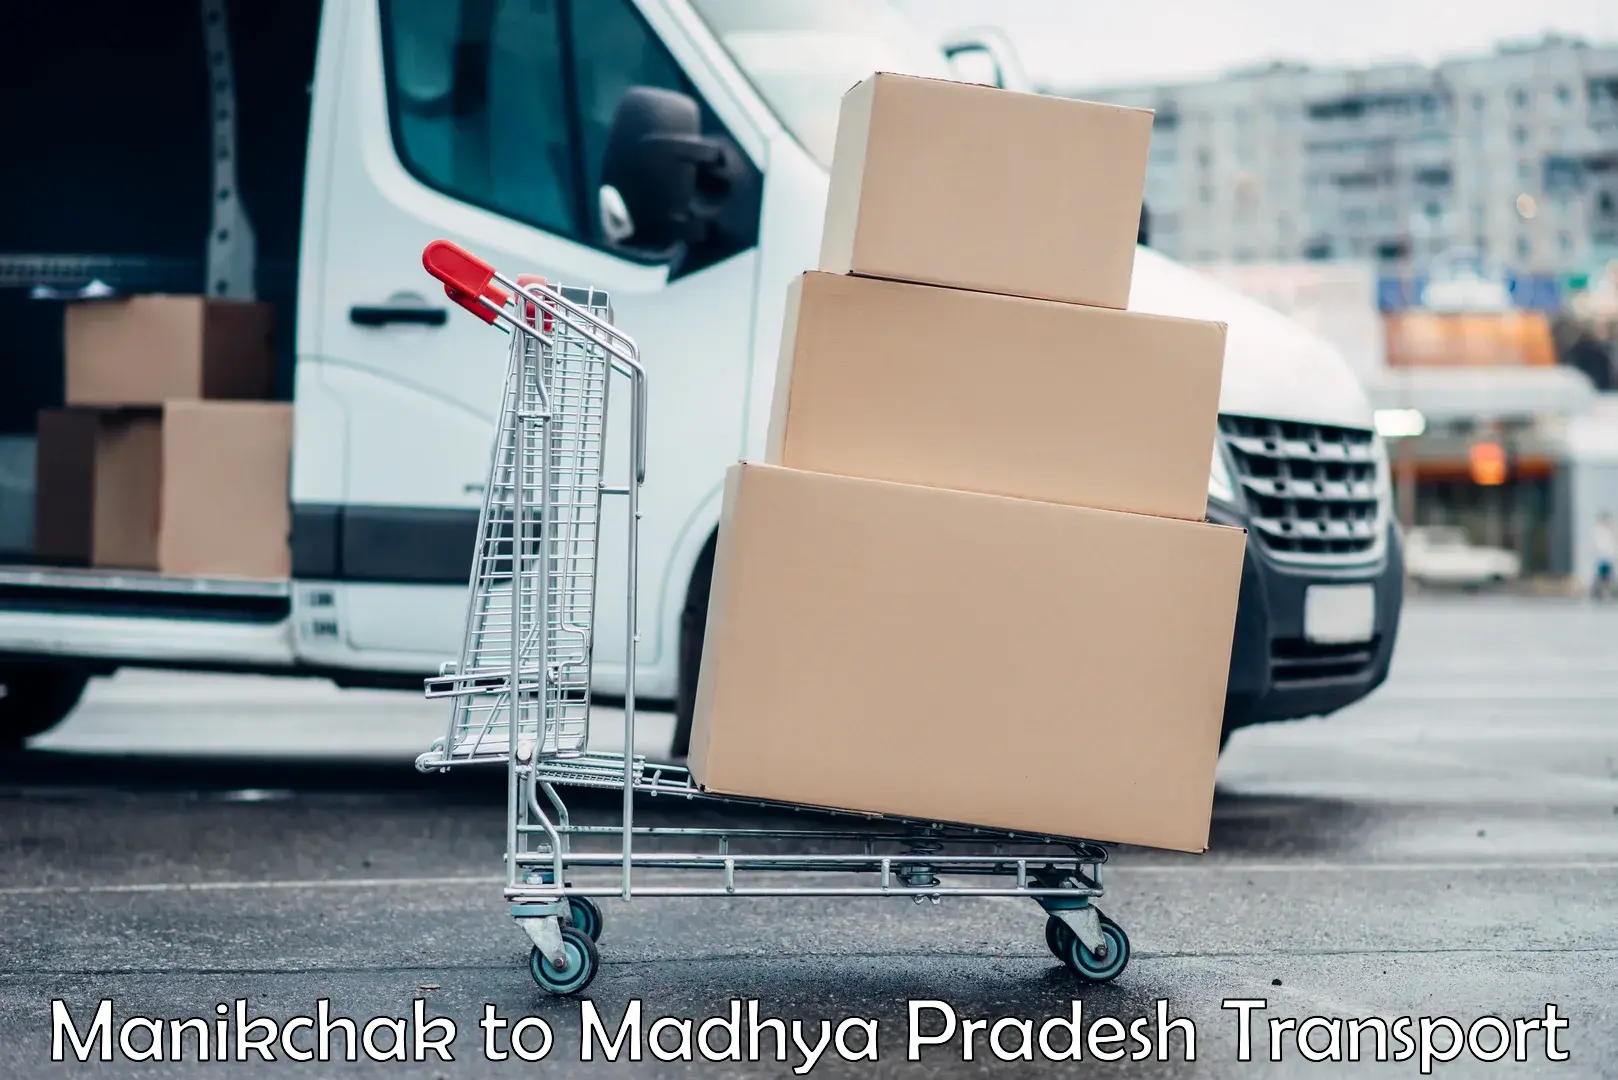 Transportation services in Manikchak to Madhya Pradesh